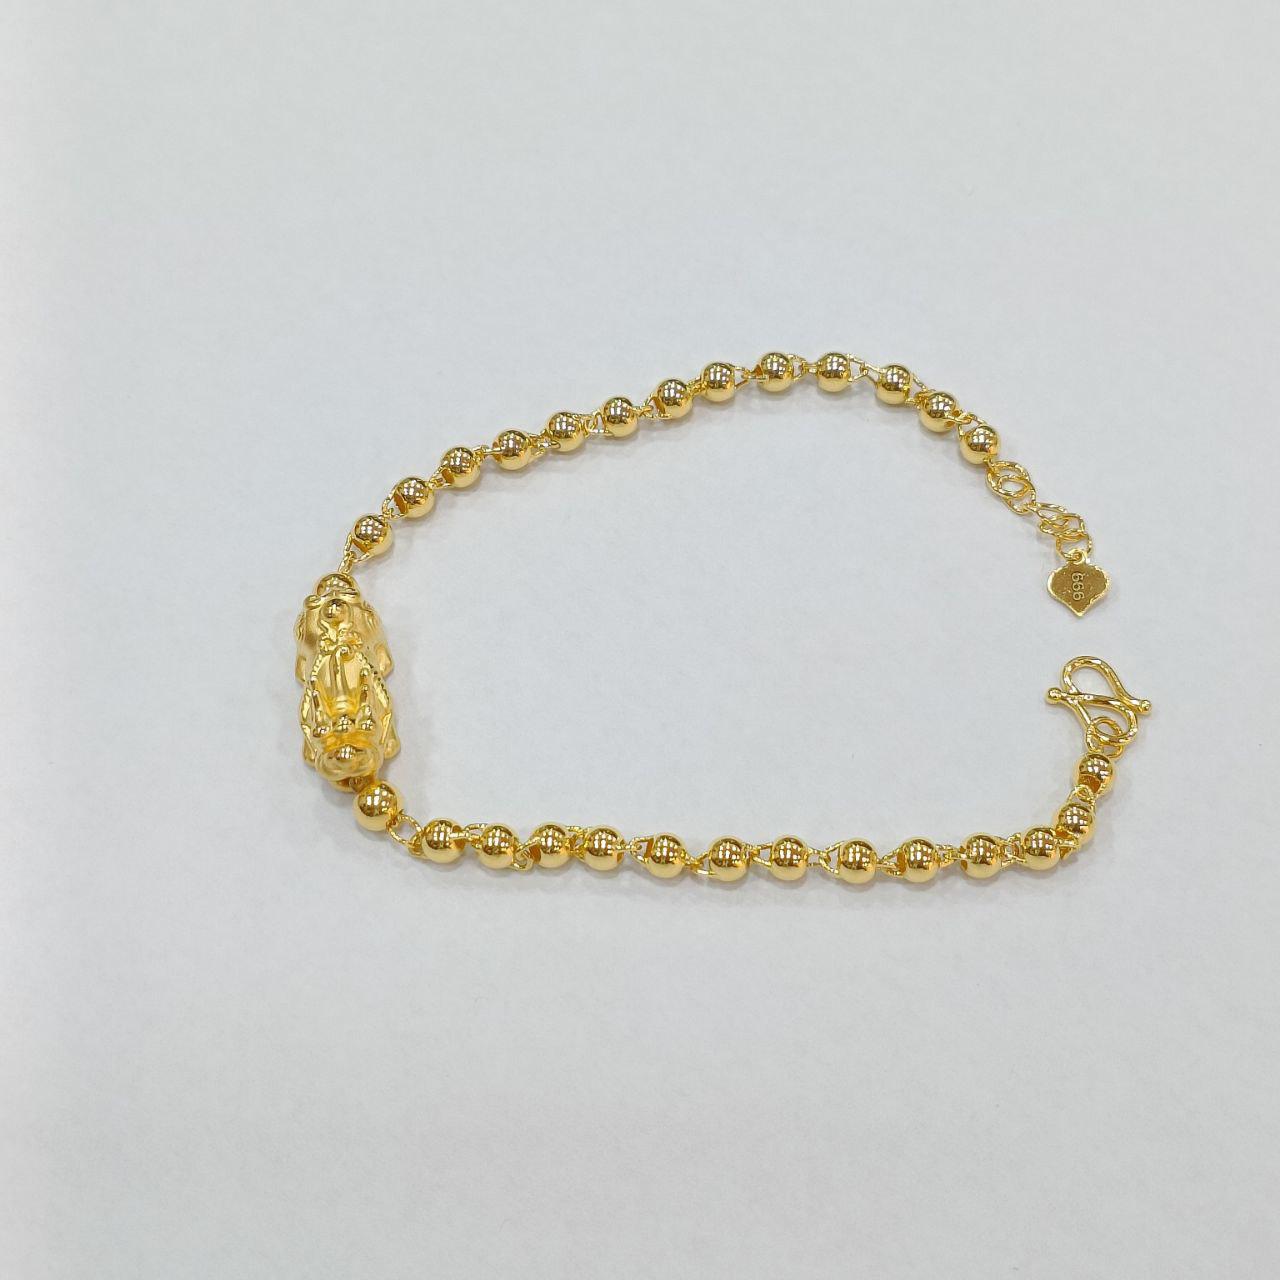 24k / 999 Gold Pixiu Ball Bracelet-999 gold-Best Gold Shop